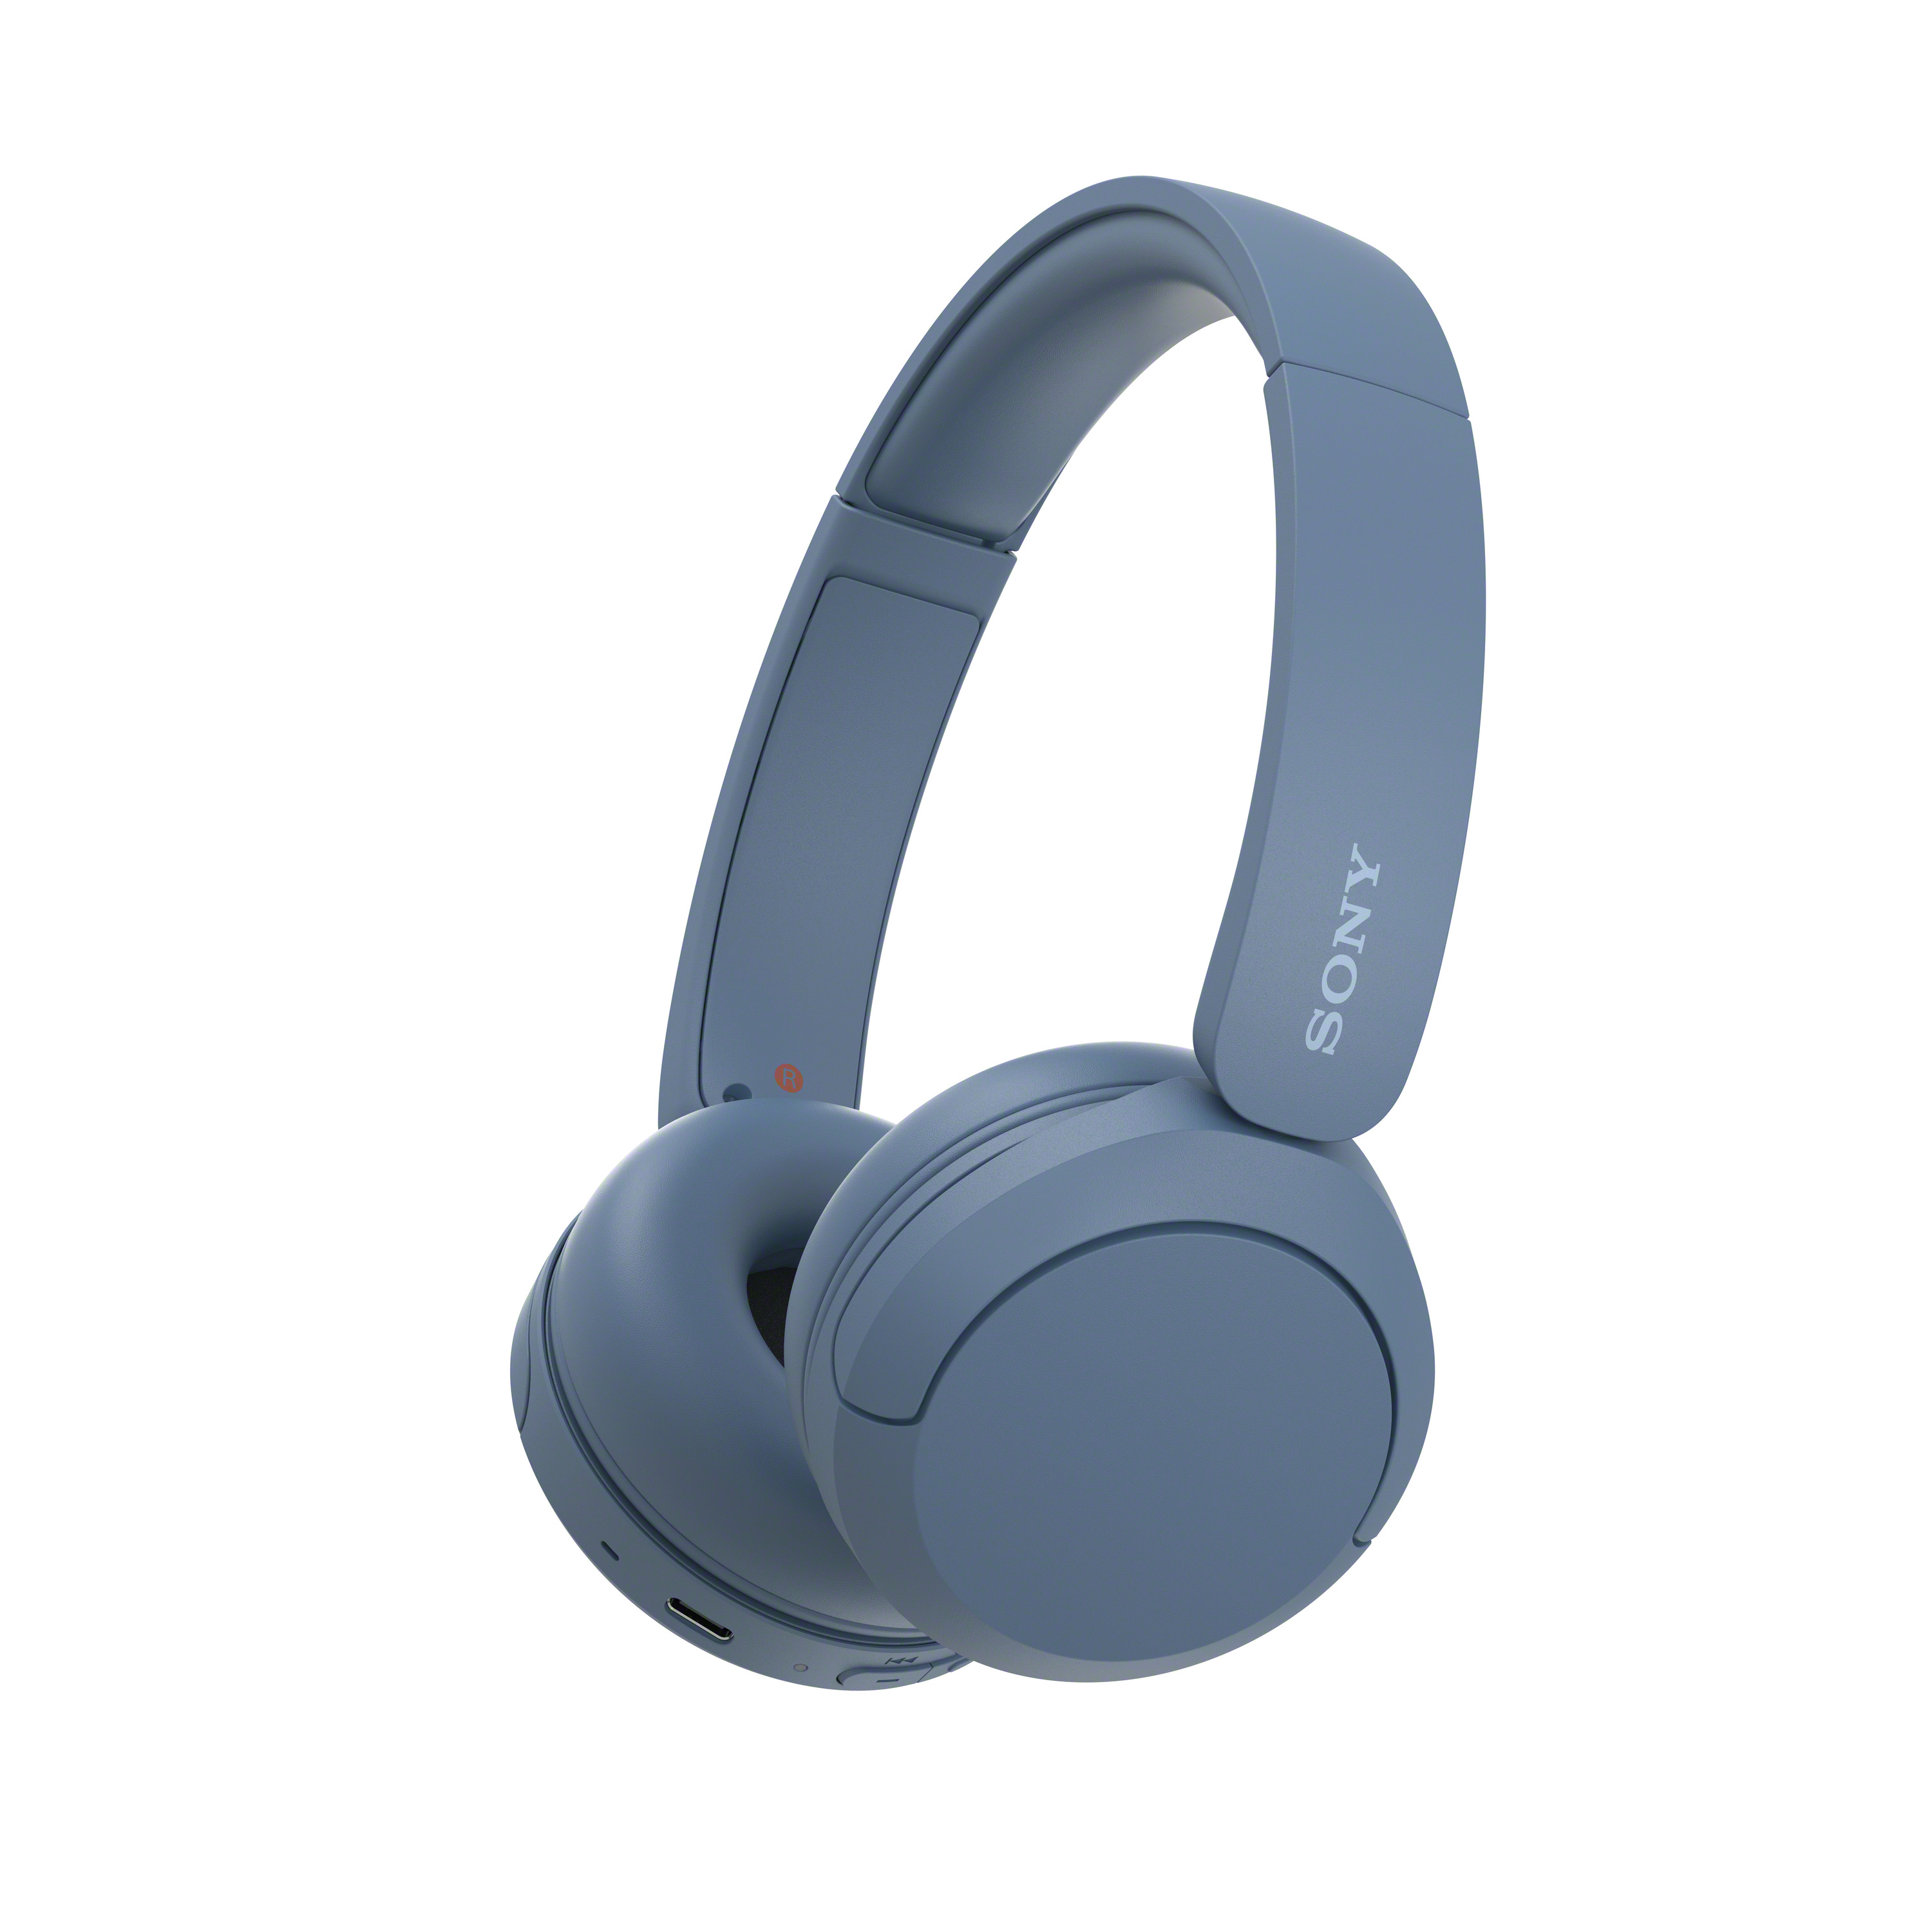 Ασύρματα ακουστικά Sony WH-CH520 σε μπλε χρώμα